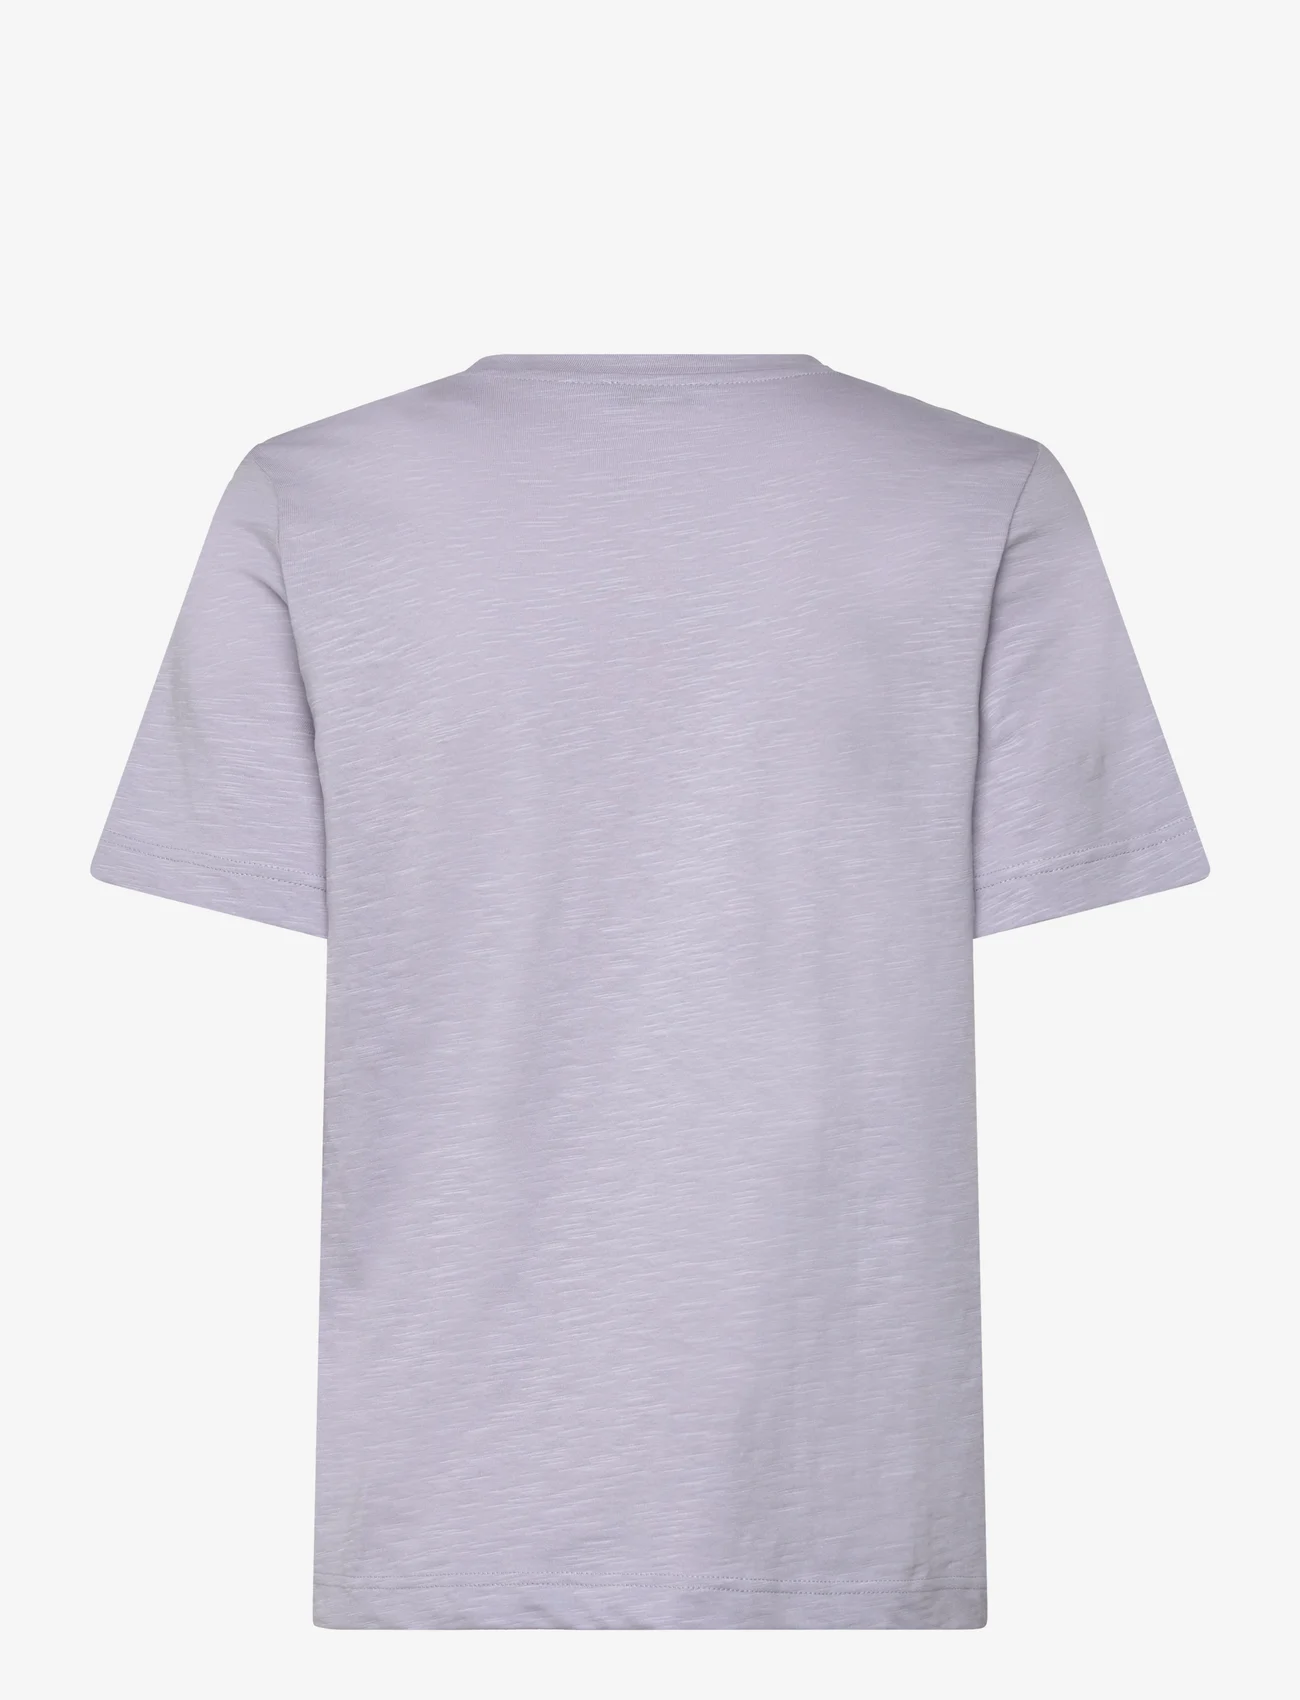 Esprit Casual - T-Shirts - zemākās cenas - light blue lavender - 1